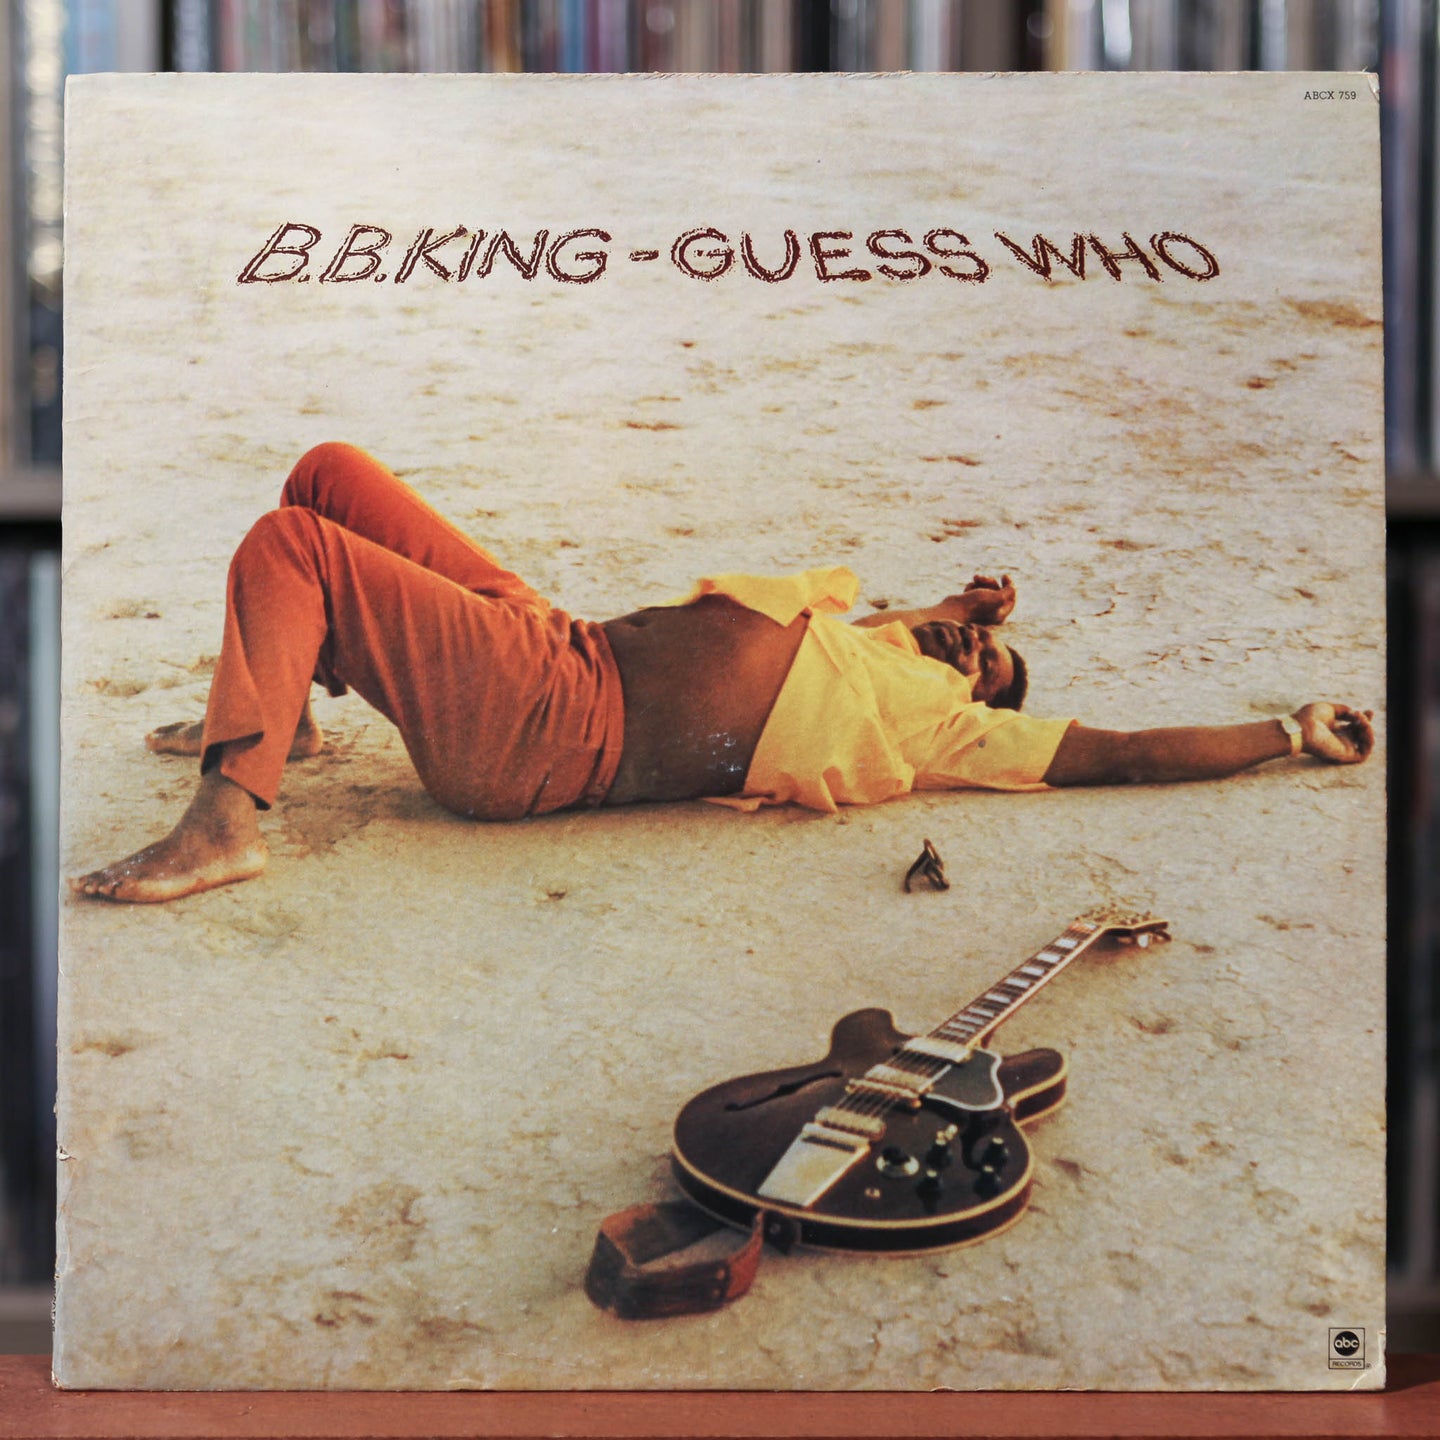 B.B. King - Guess Who - 1972 ABC, VG+/VG+